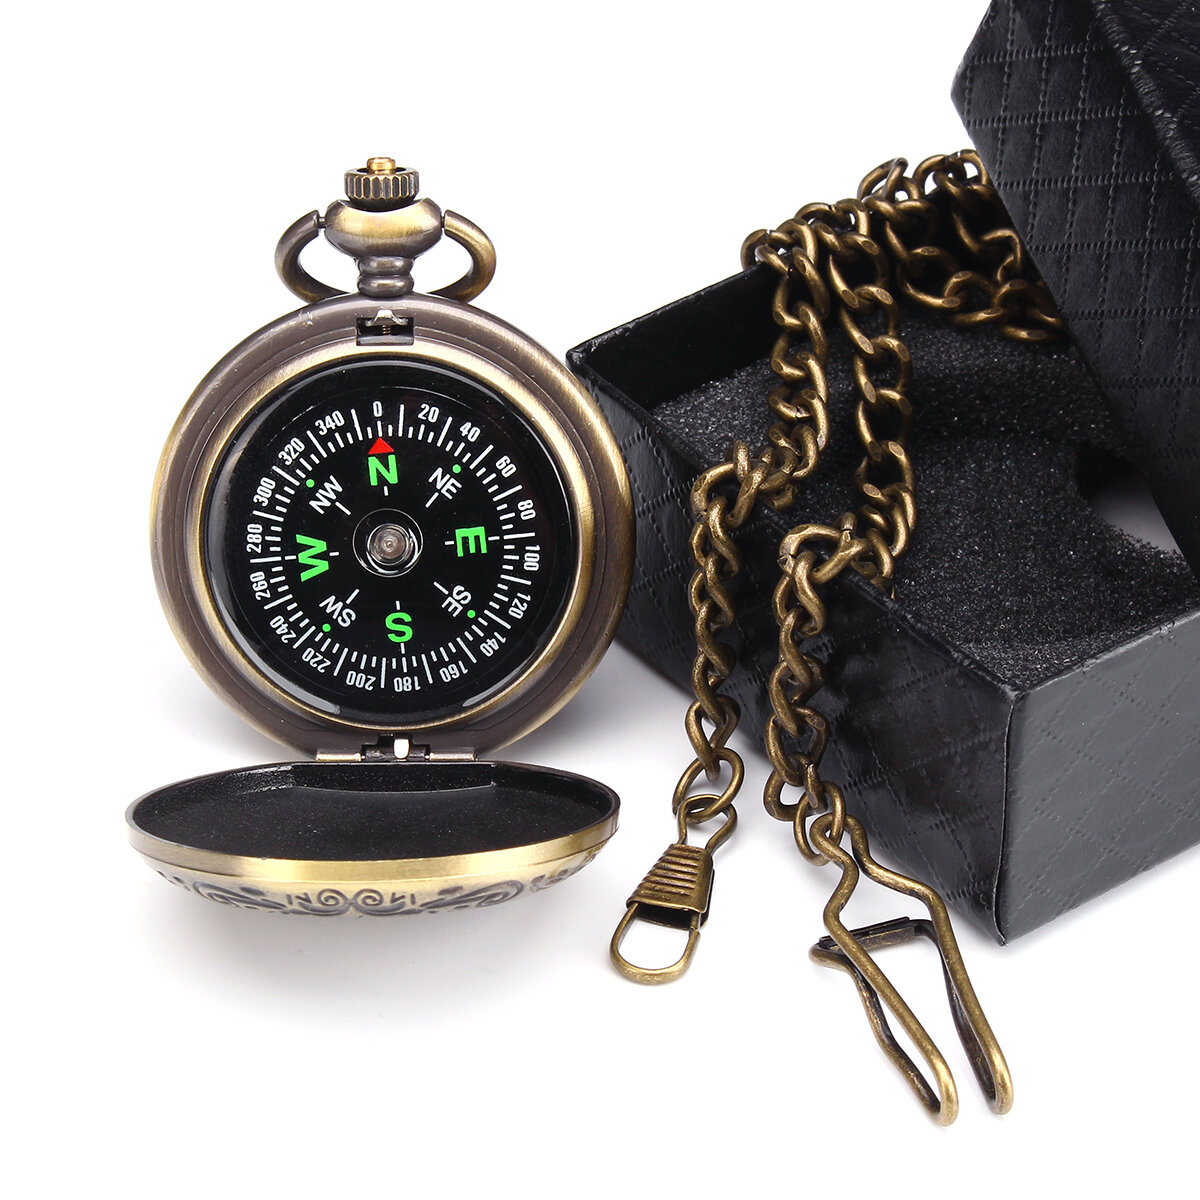 Brújula de bolsillo CHARMINER con cadena, brújula de latón portátil clásica con tapa saltarina, reloj impermeable, herramientas de navegación abatibles.